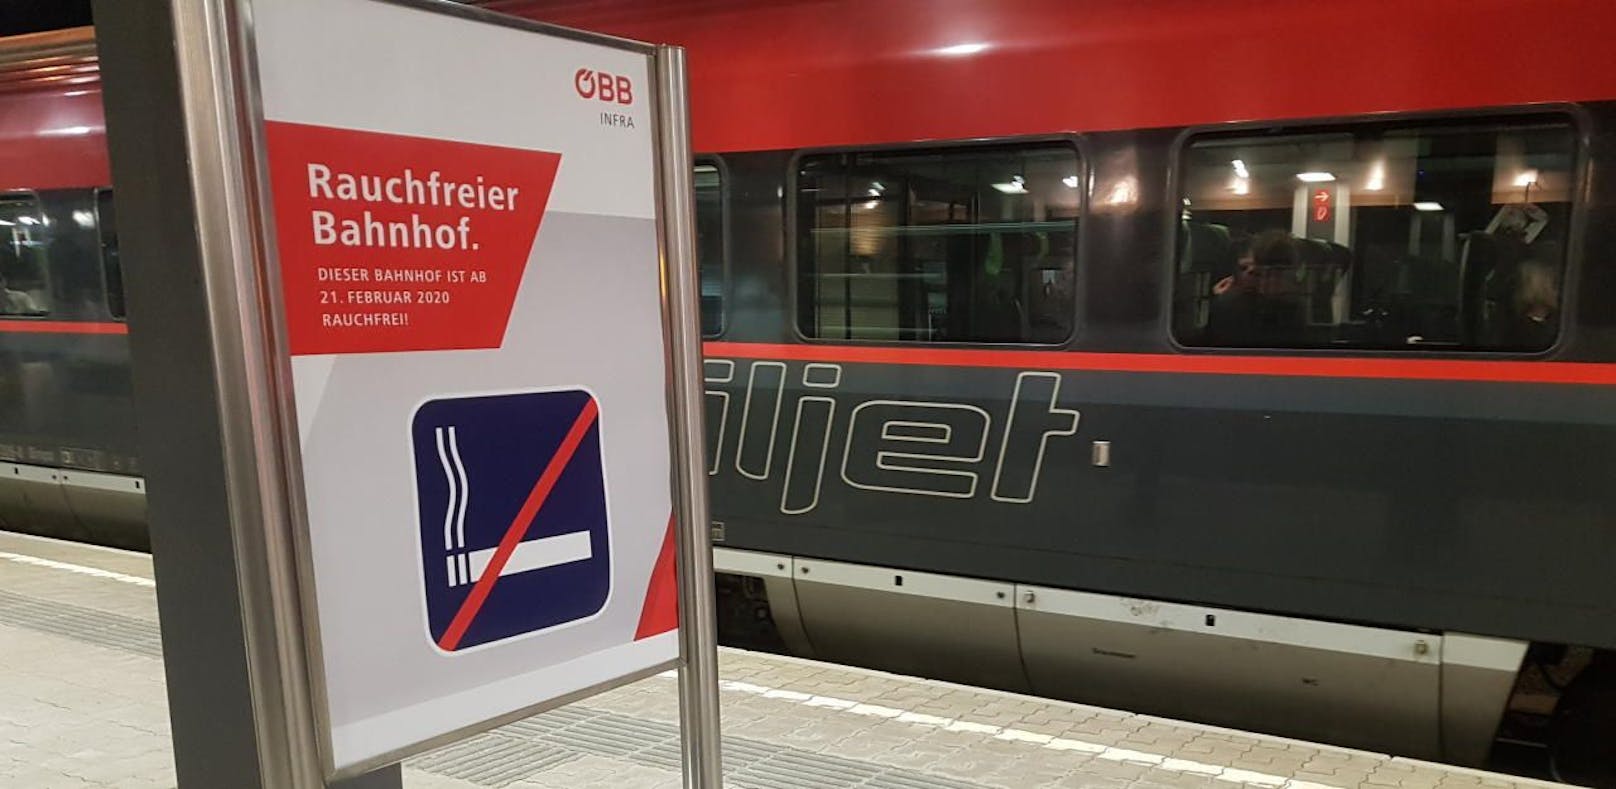 Bahnhof in St. Pölten wird ab 21. Februar rauchfrei – Österreich